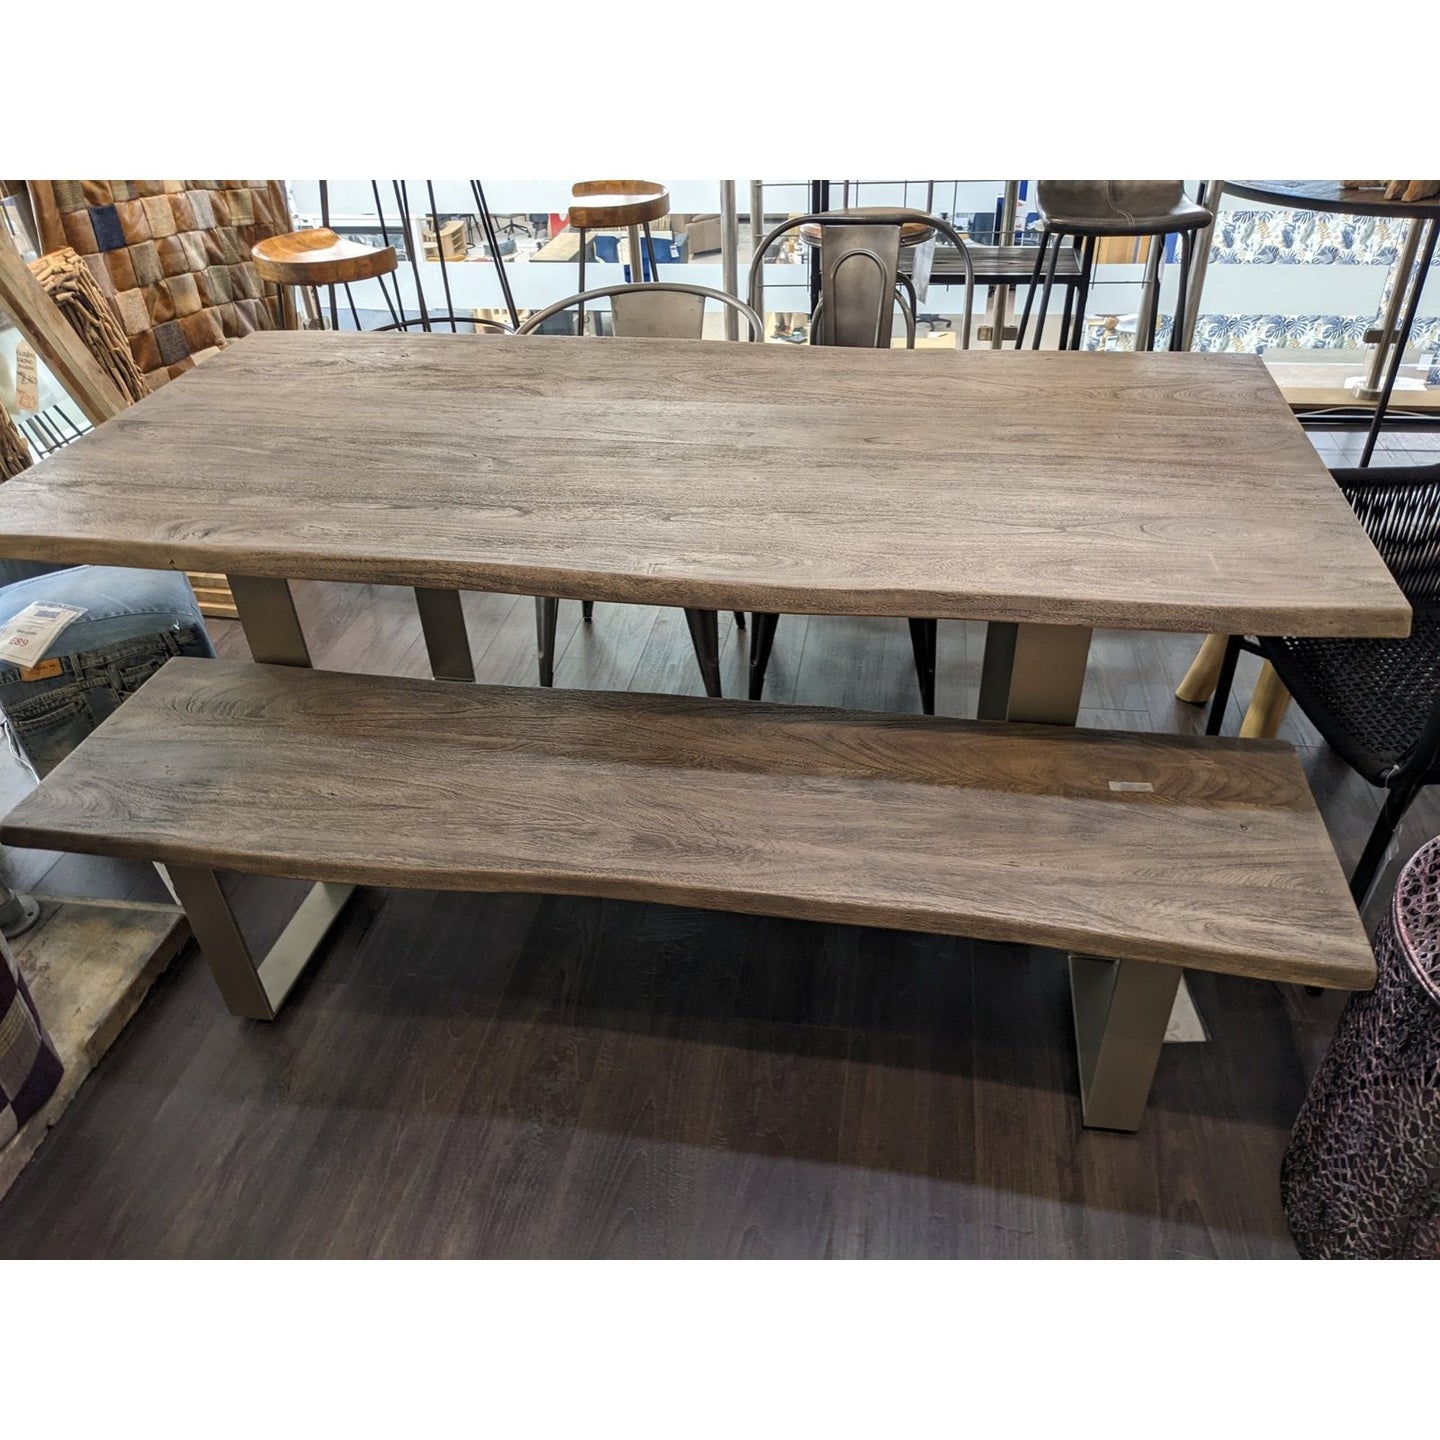 Huntington Grey Table (200 x 100) and Bench